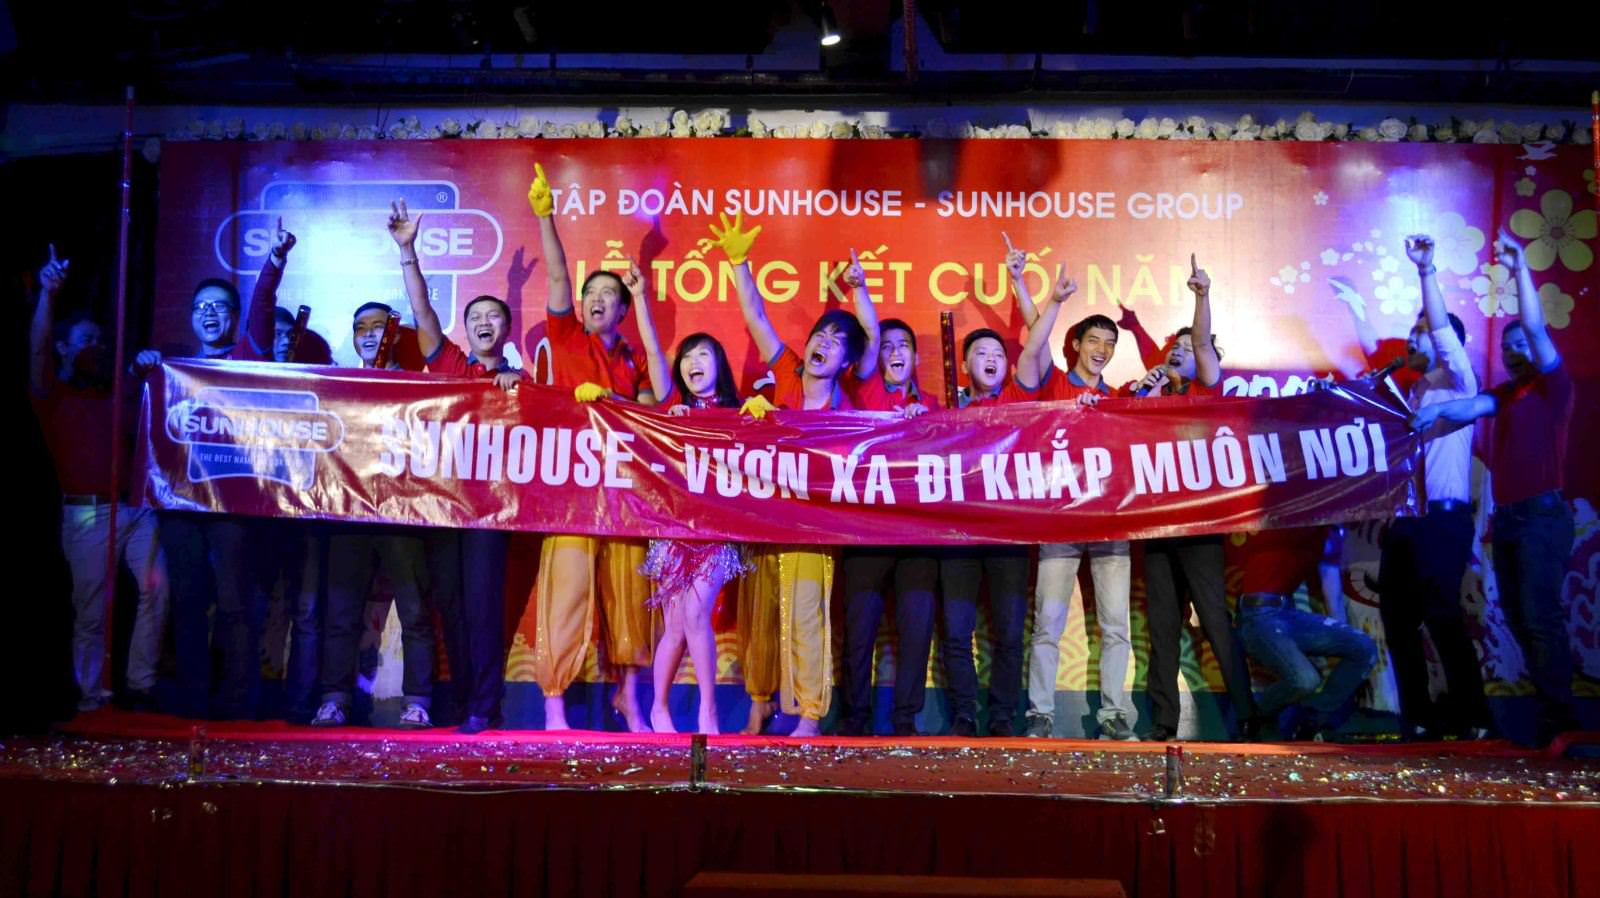 Lễ tổng kết cuối năm 2014 Sunhouse Group ý nghĩa, ấn tượng và ấm cúng 4